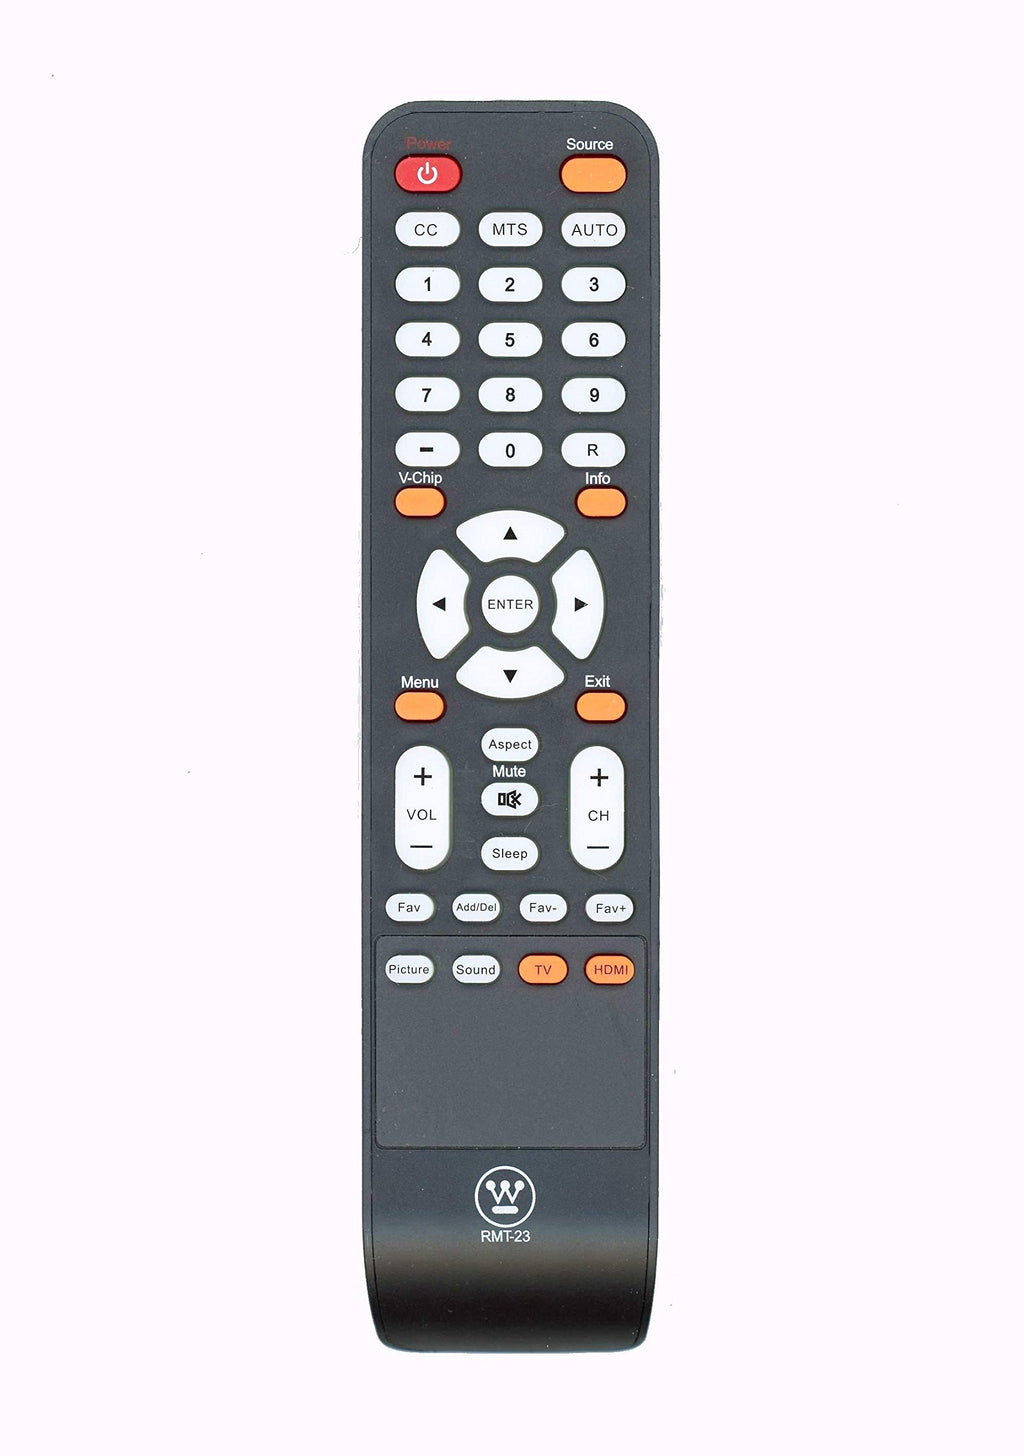 Original Westinghouse RMT-23 V2 LCD LED TV Remote Control for Models EW40F1G1, CW50T9XW, DWM40F1G1, DWM40F2G1, EU40F1G1